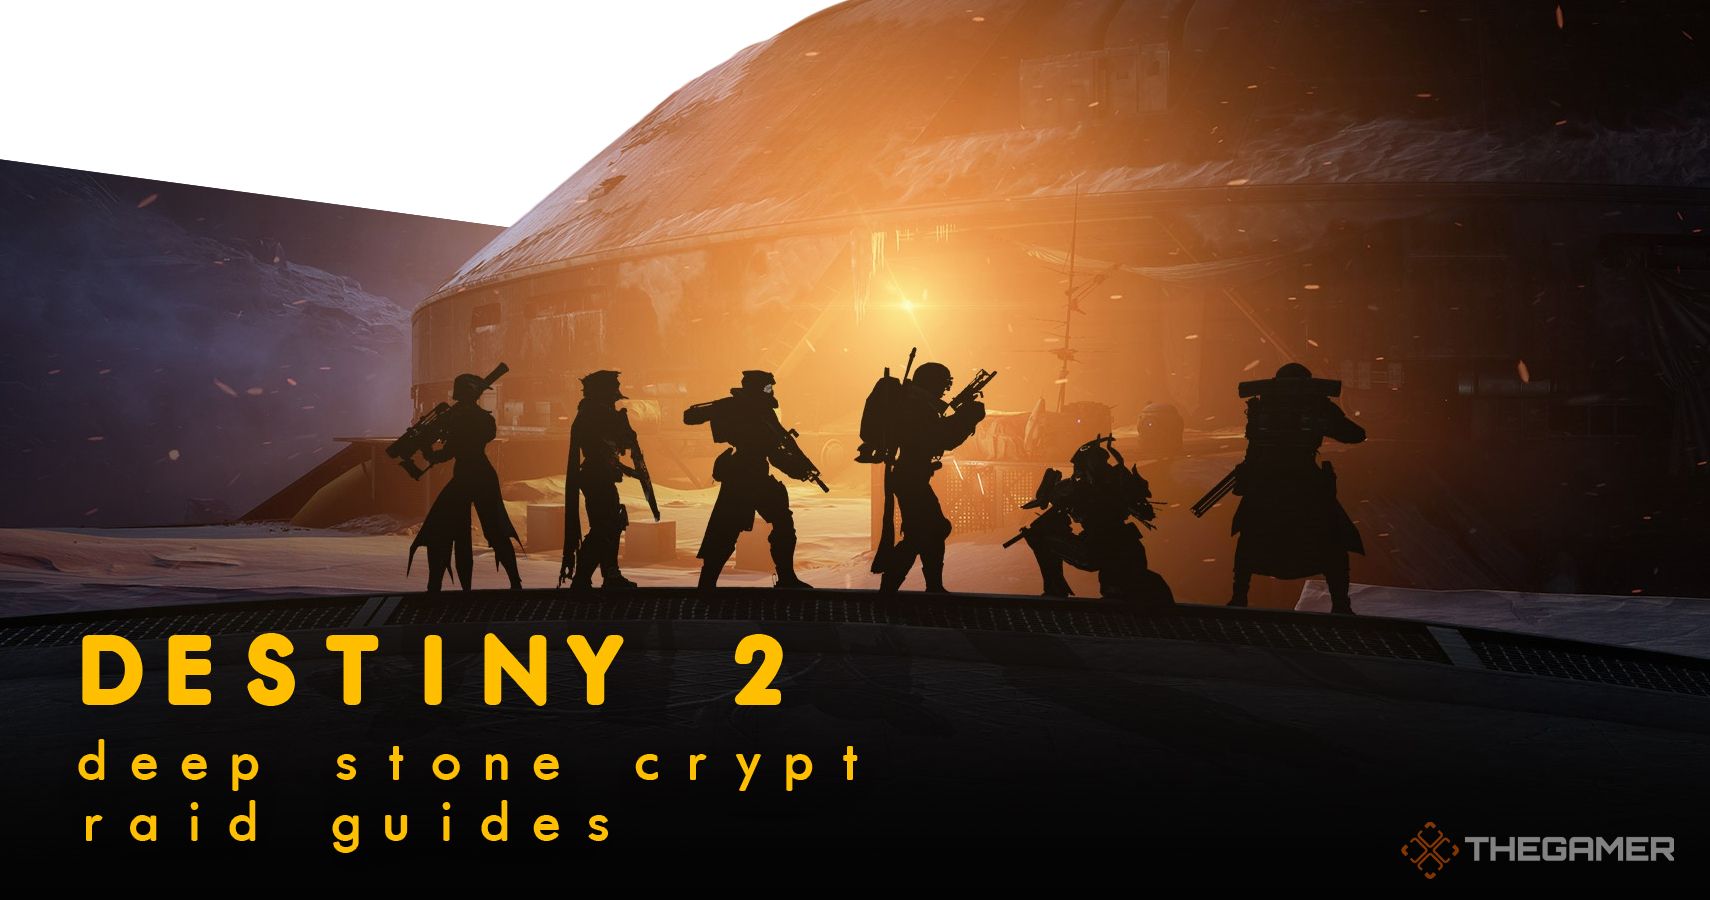 Destiny 2 deep stone crypt raid guides